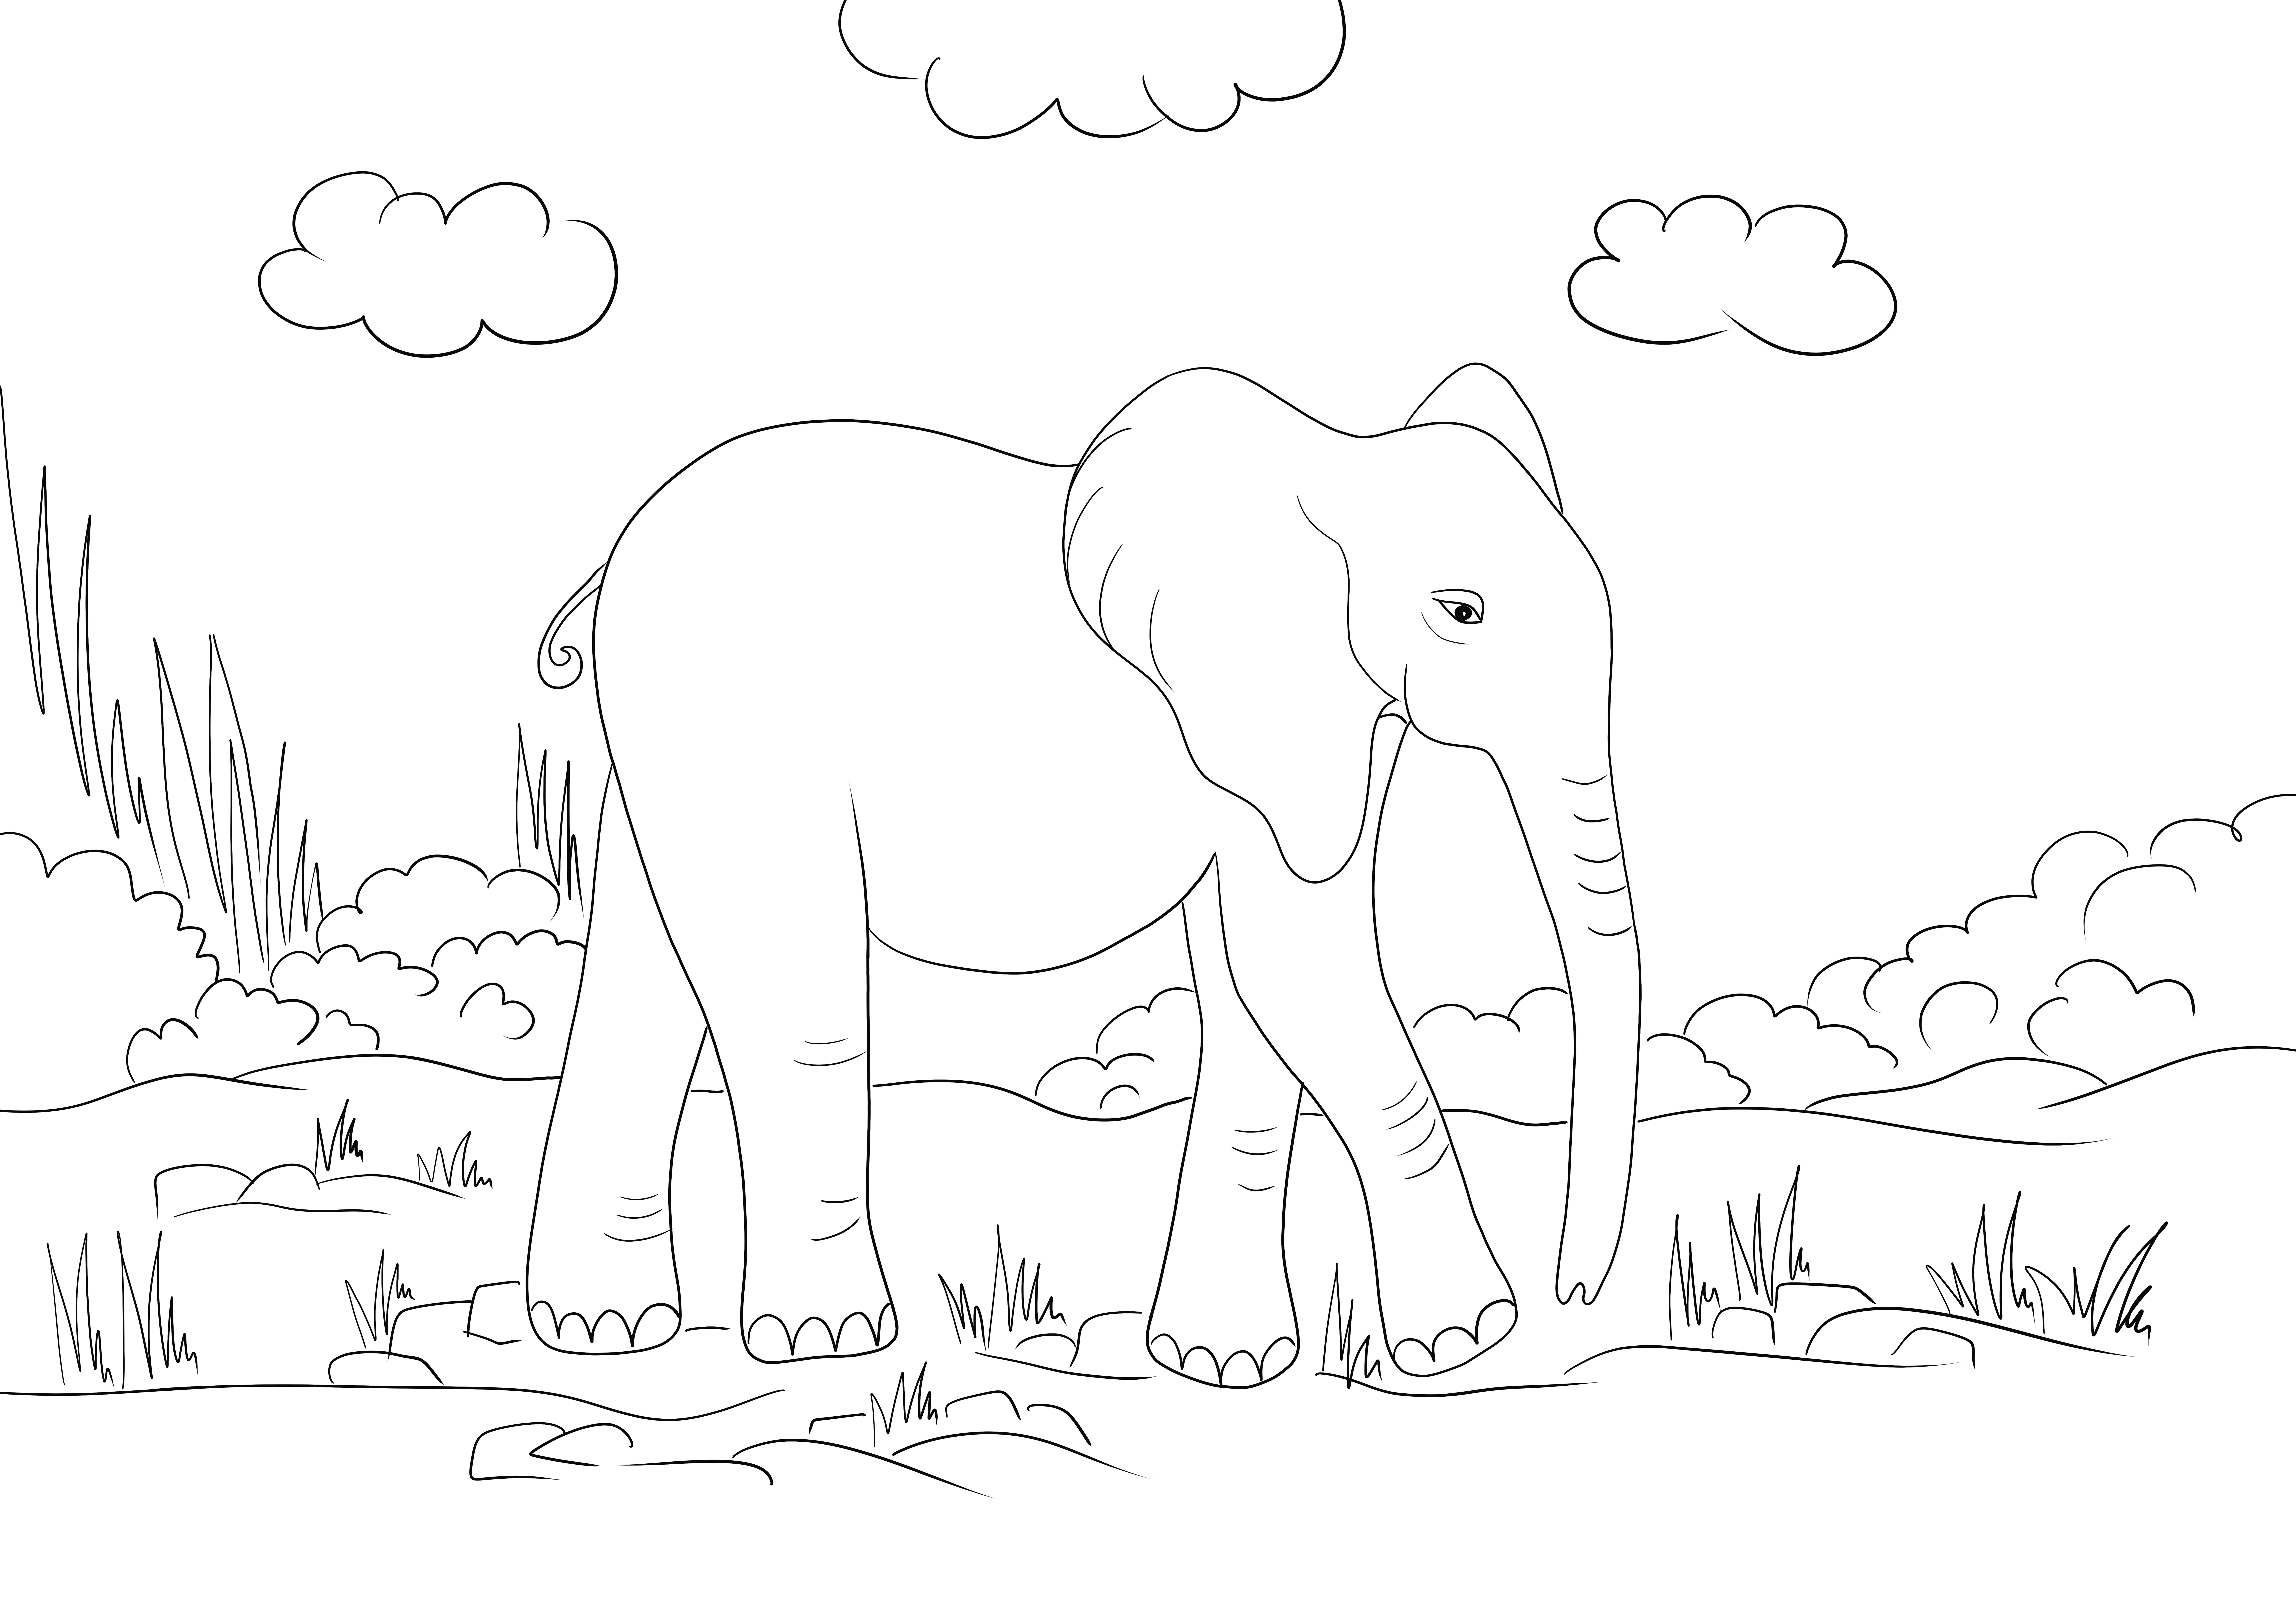 Gambar mewarnai gajah yang lucu untuk diunduh atau dicetak secara gratis